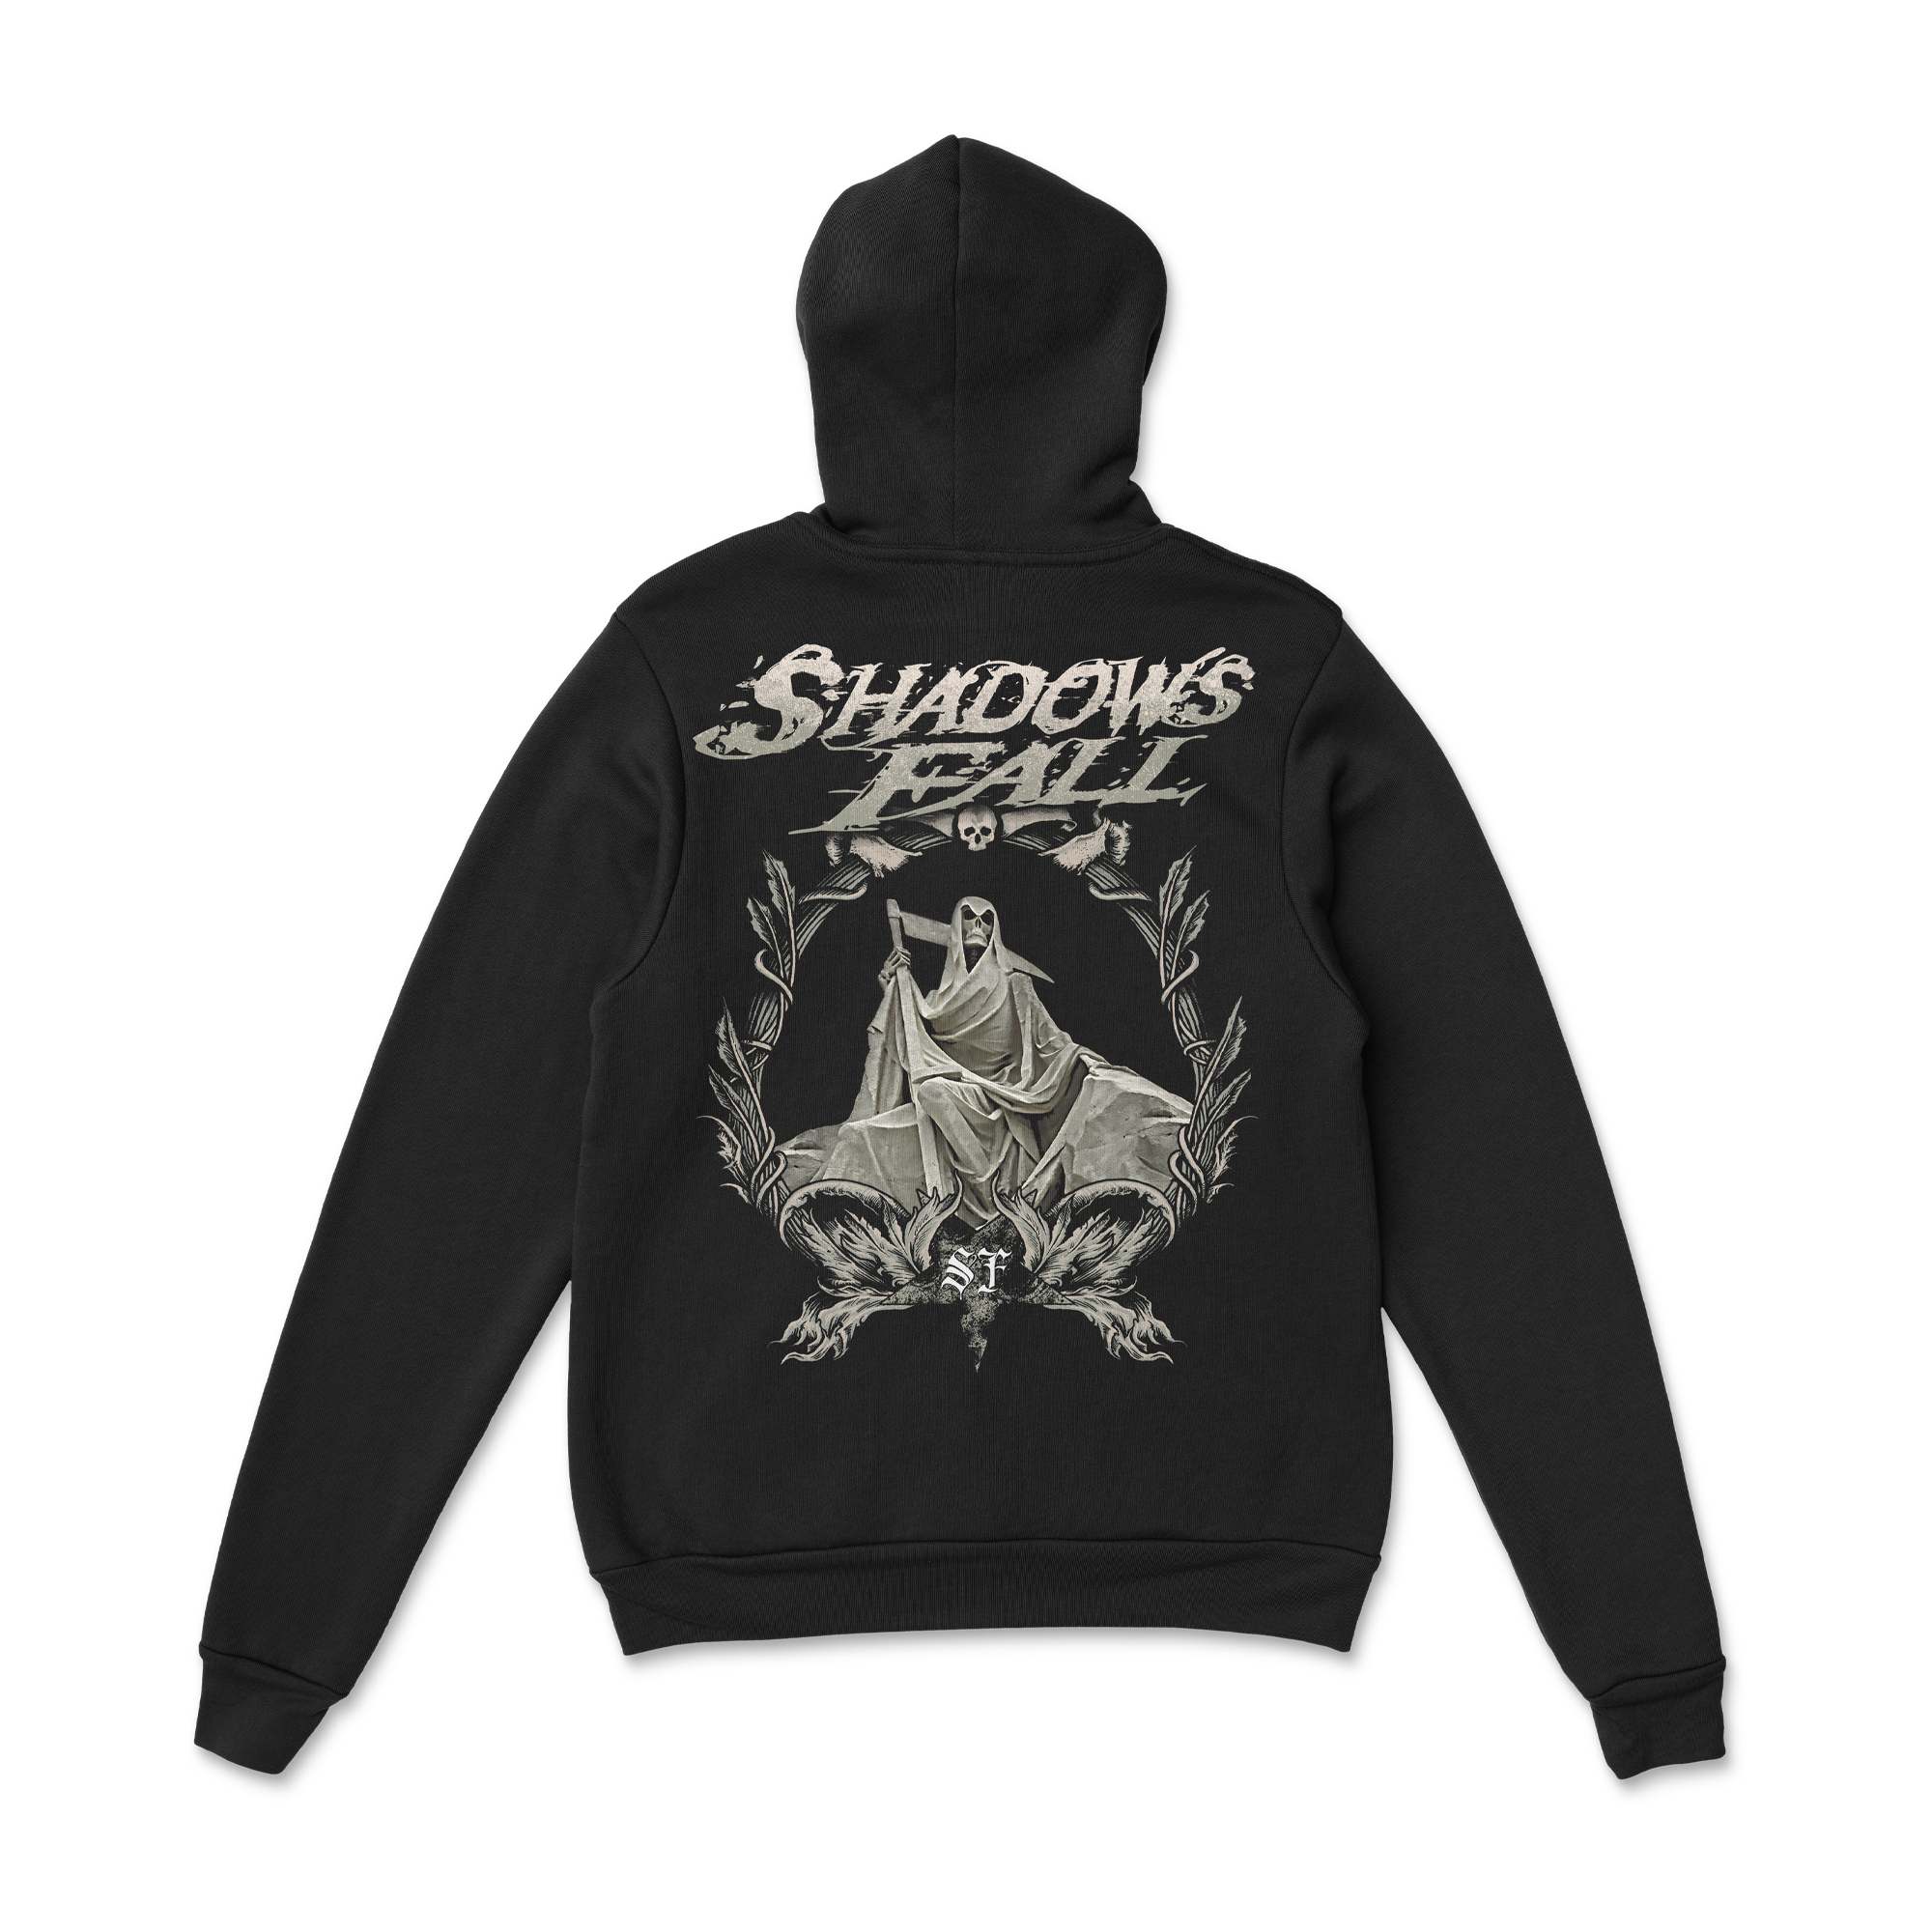 Shadows Fall - Backdrop Hoodie